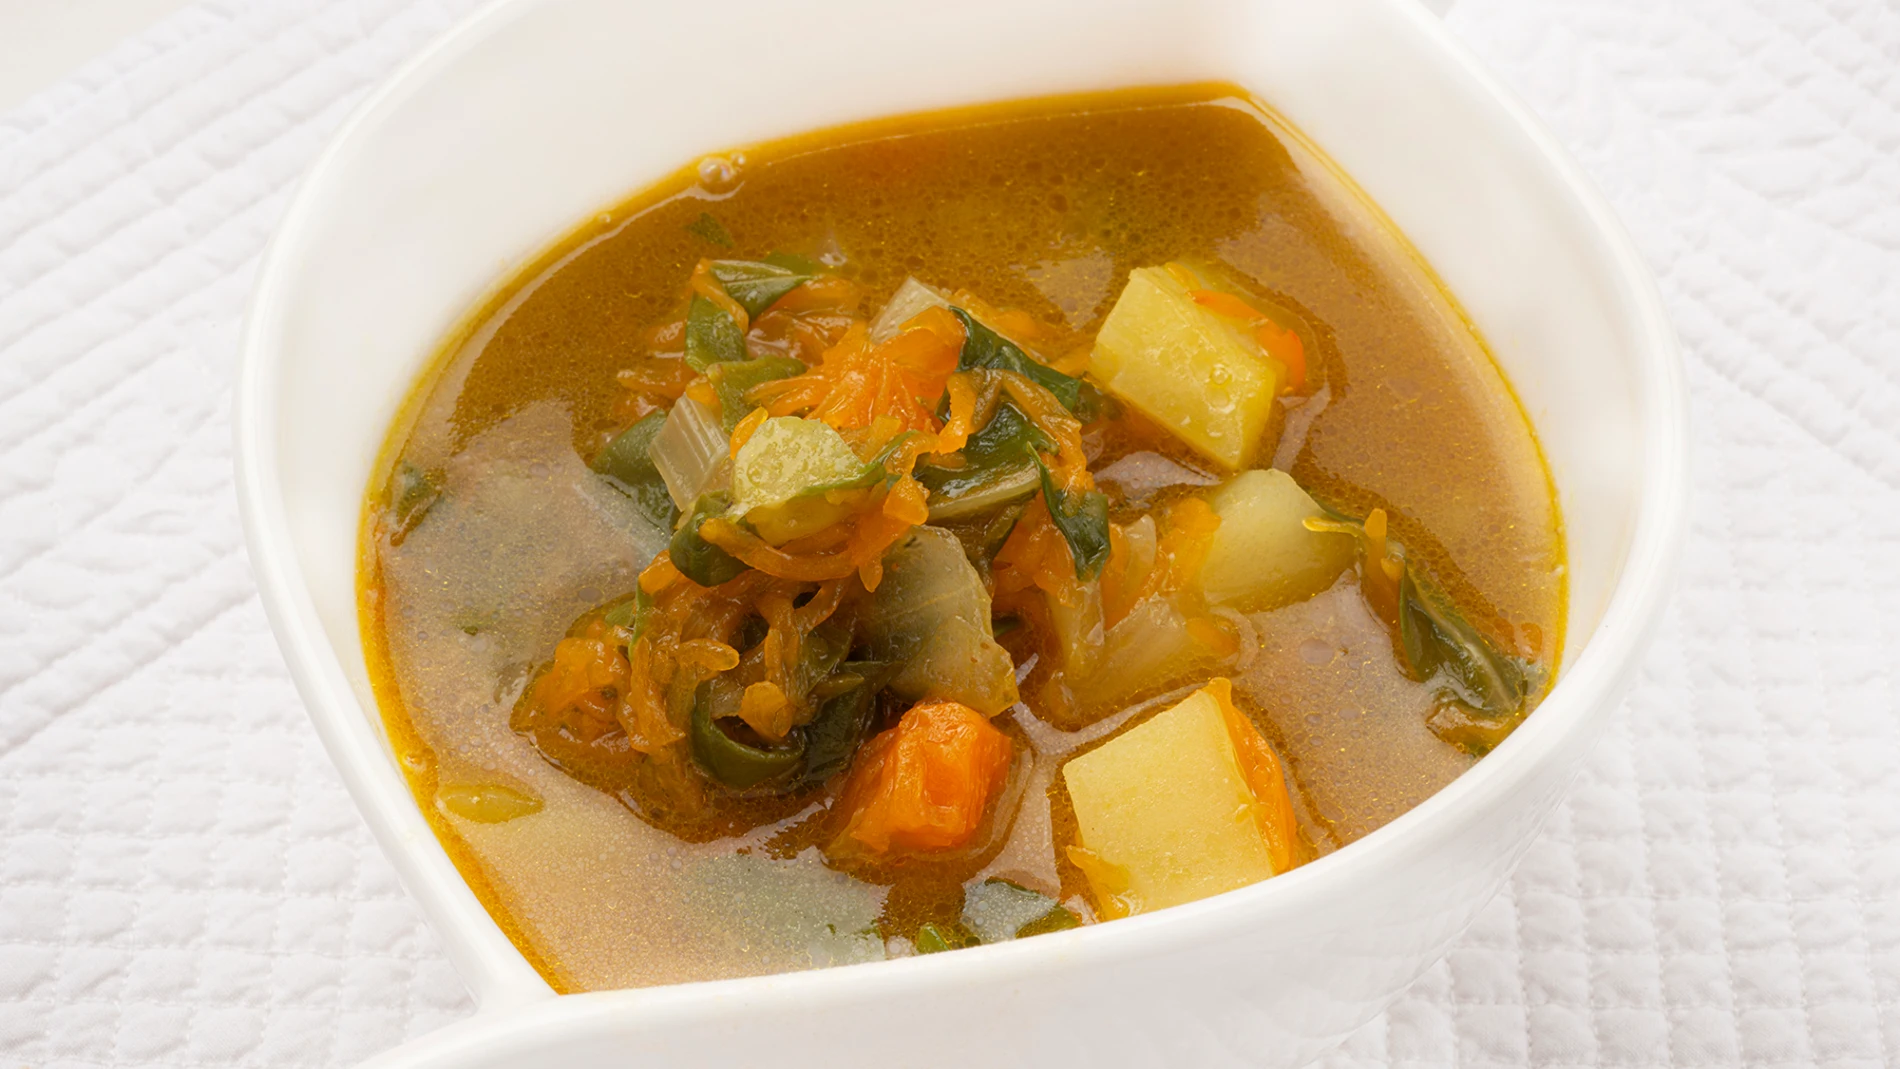 Receta barata de Karlos Arguiñano: sopa de acelgas y calabaza al curry